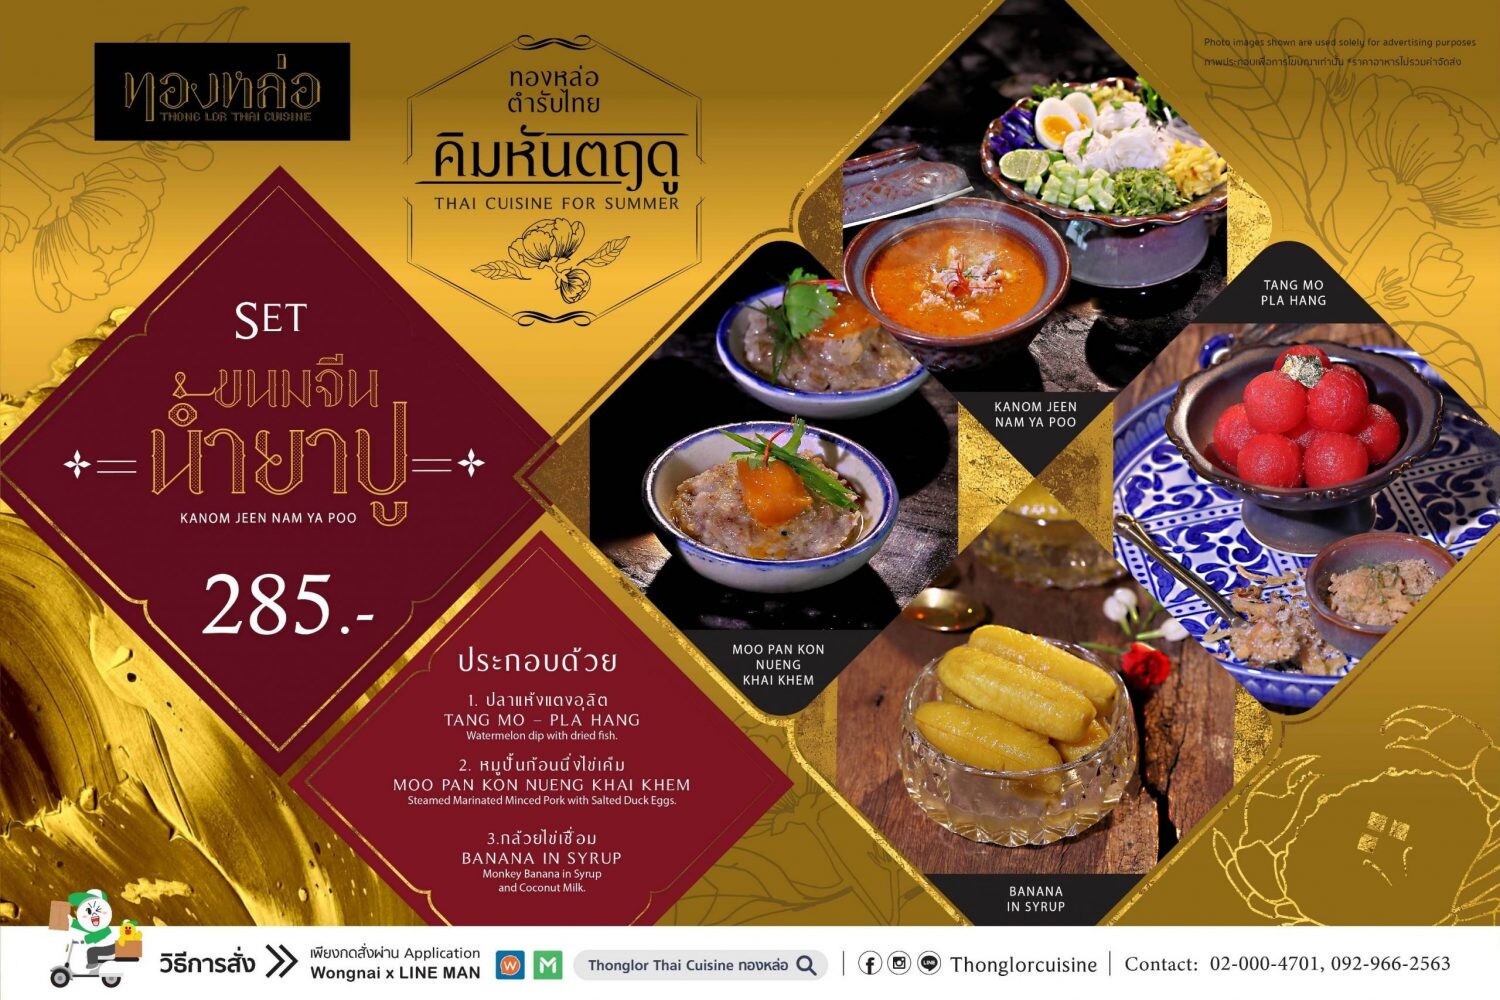 ร้านอาหารไทย “ทองหล่อ” ชวนลิ้มลองเซตอาหารคิมหันตฤดู